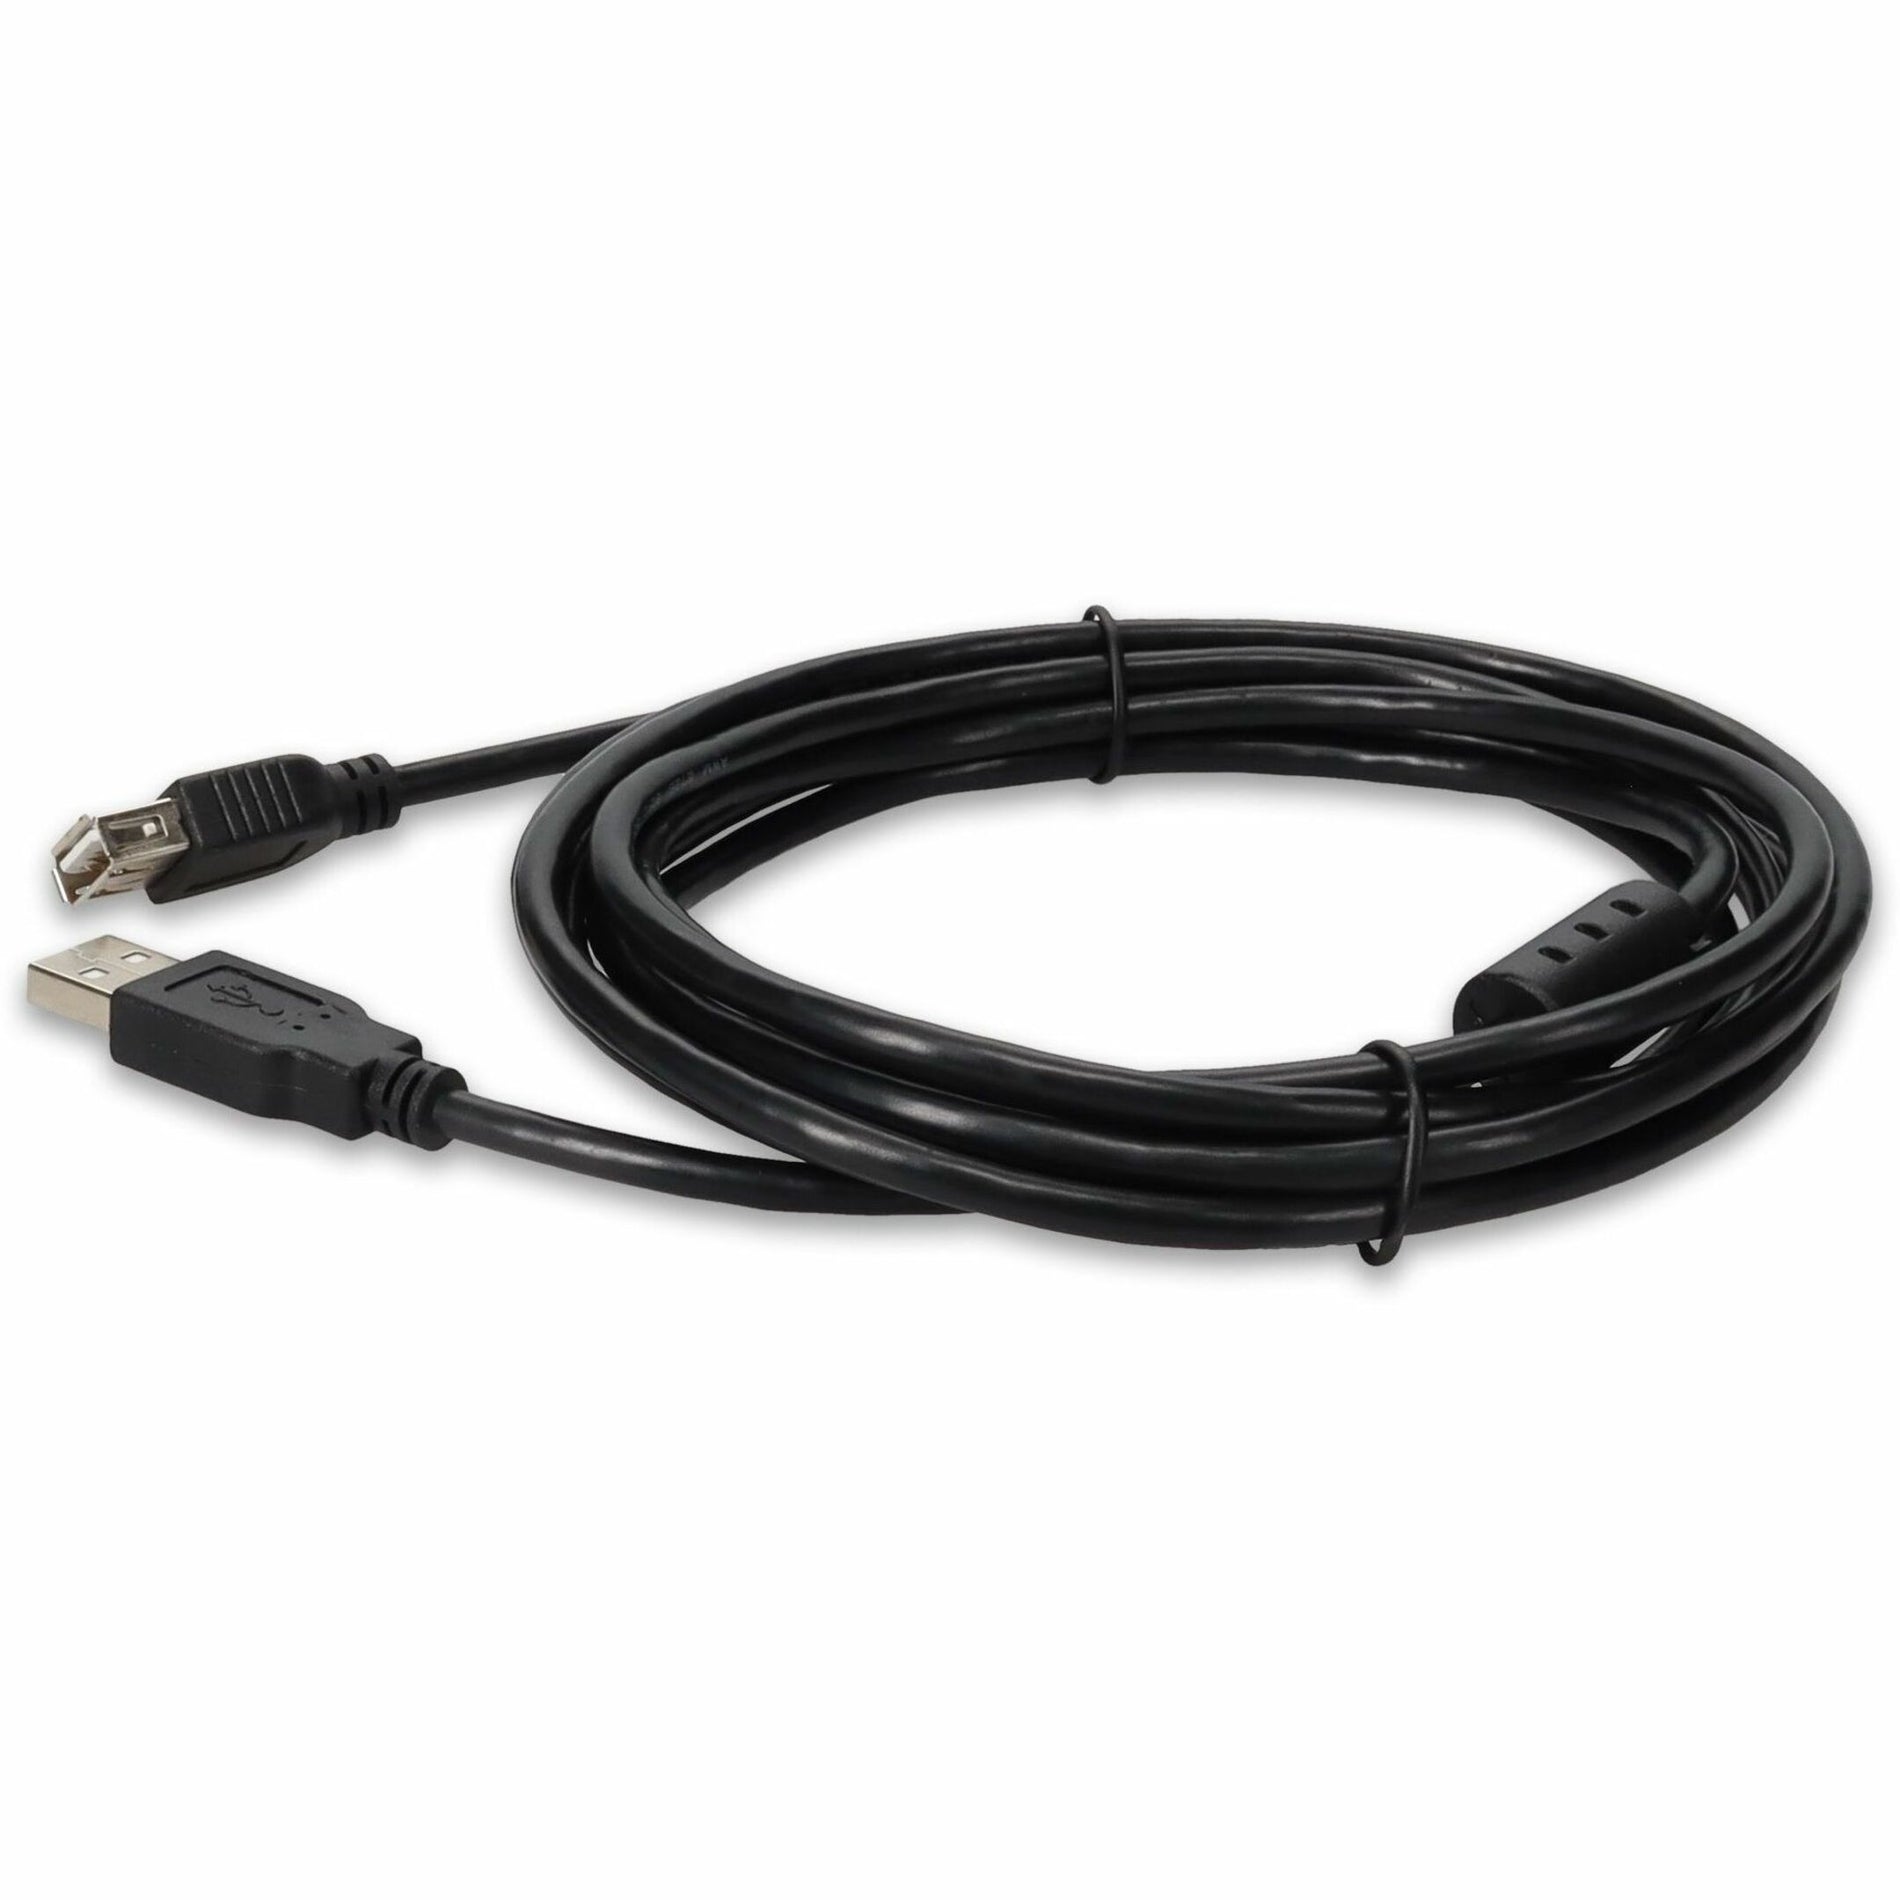 كبل تمديد USB 2.0 A إلى A بطول 10 قدم (3 متر) - ذكر إلى أنثى، أسود الملحق AddOn USBEXTAA10FB